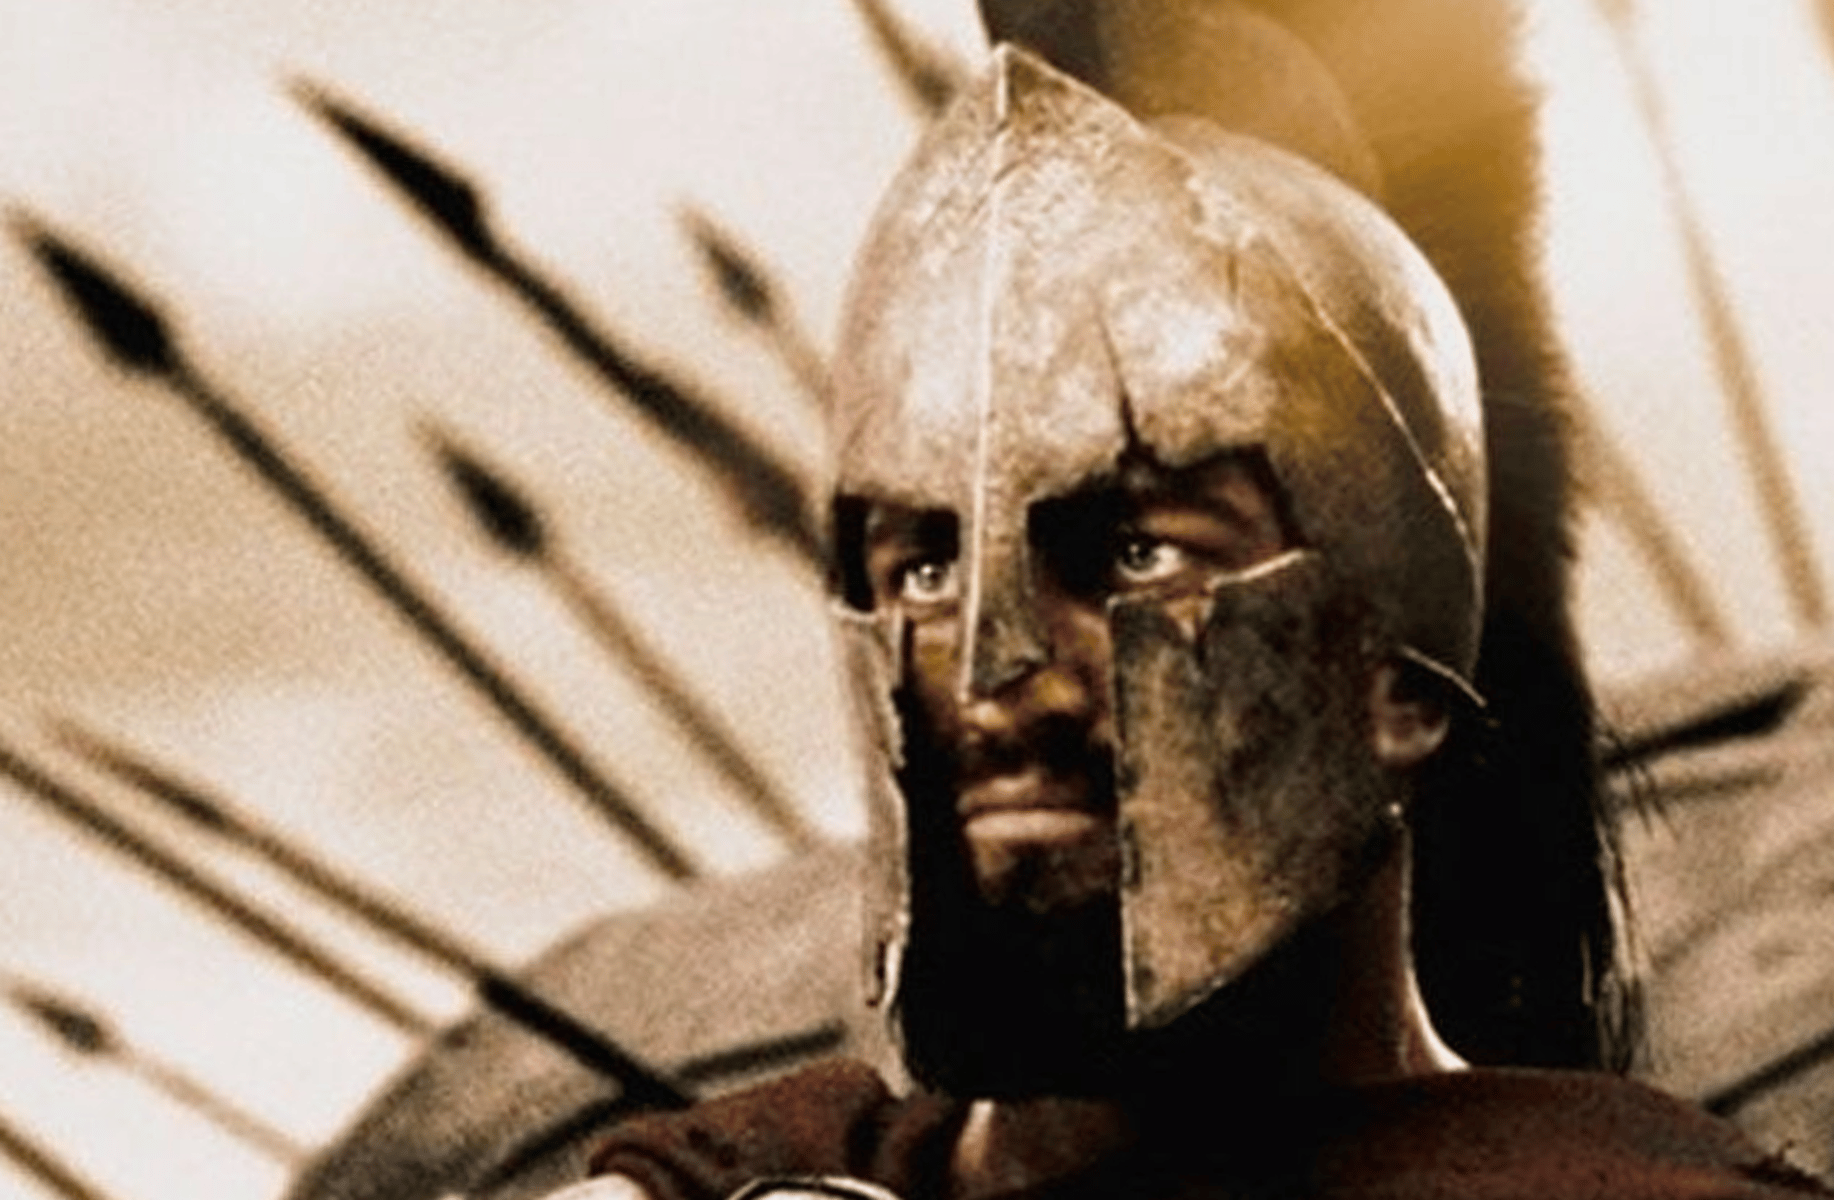 Leonidas of Sparta